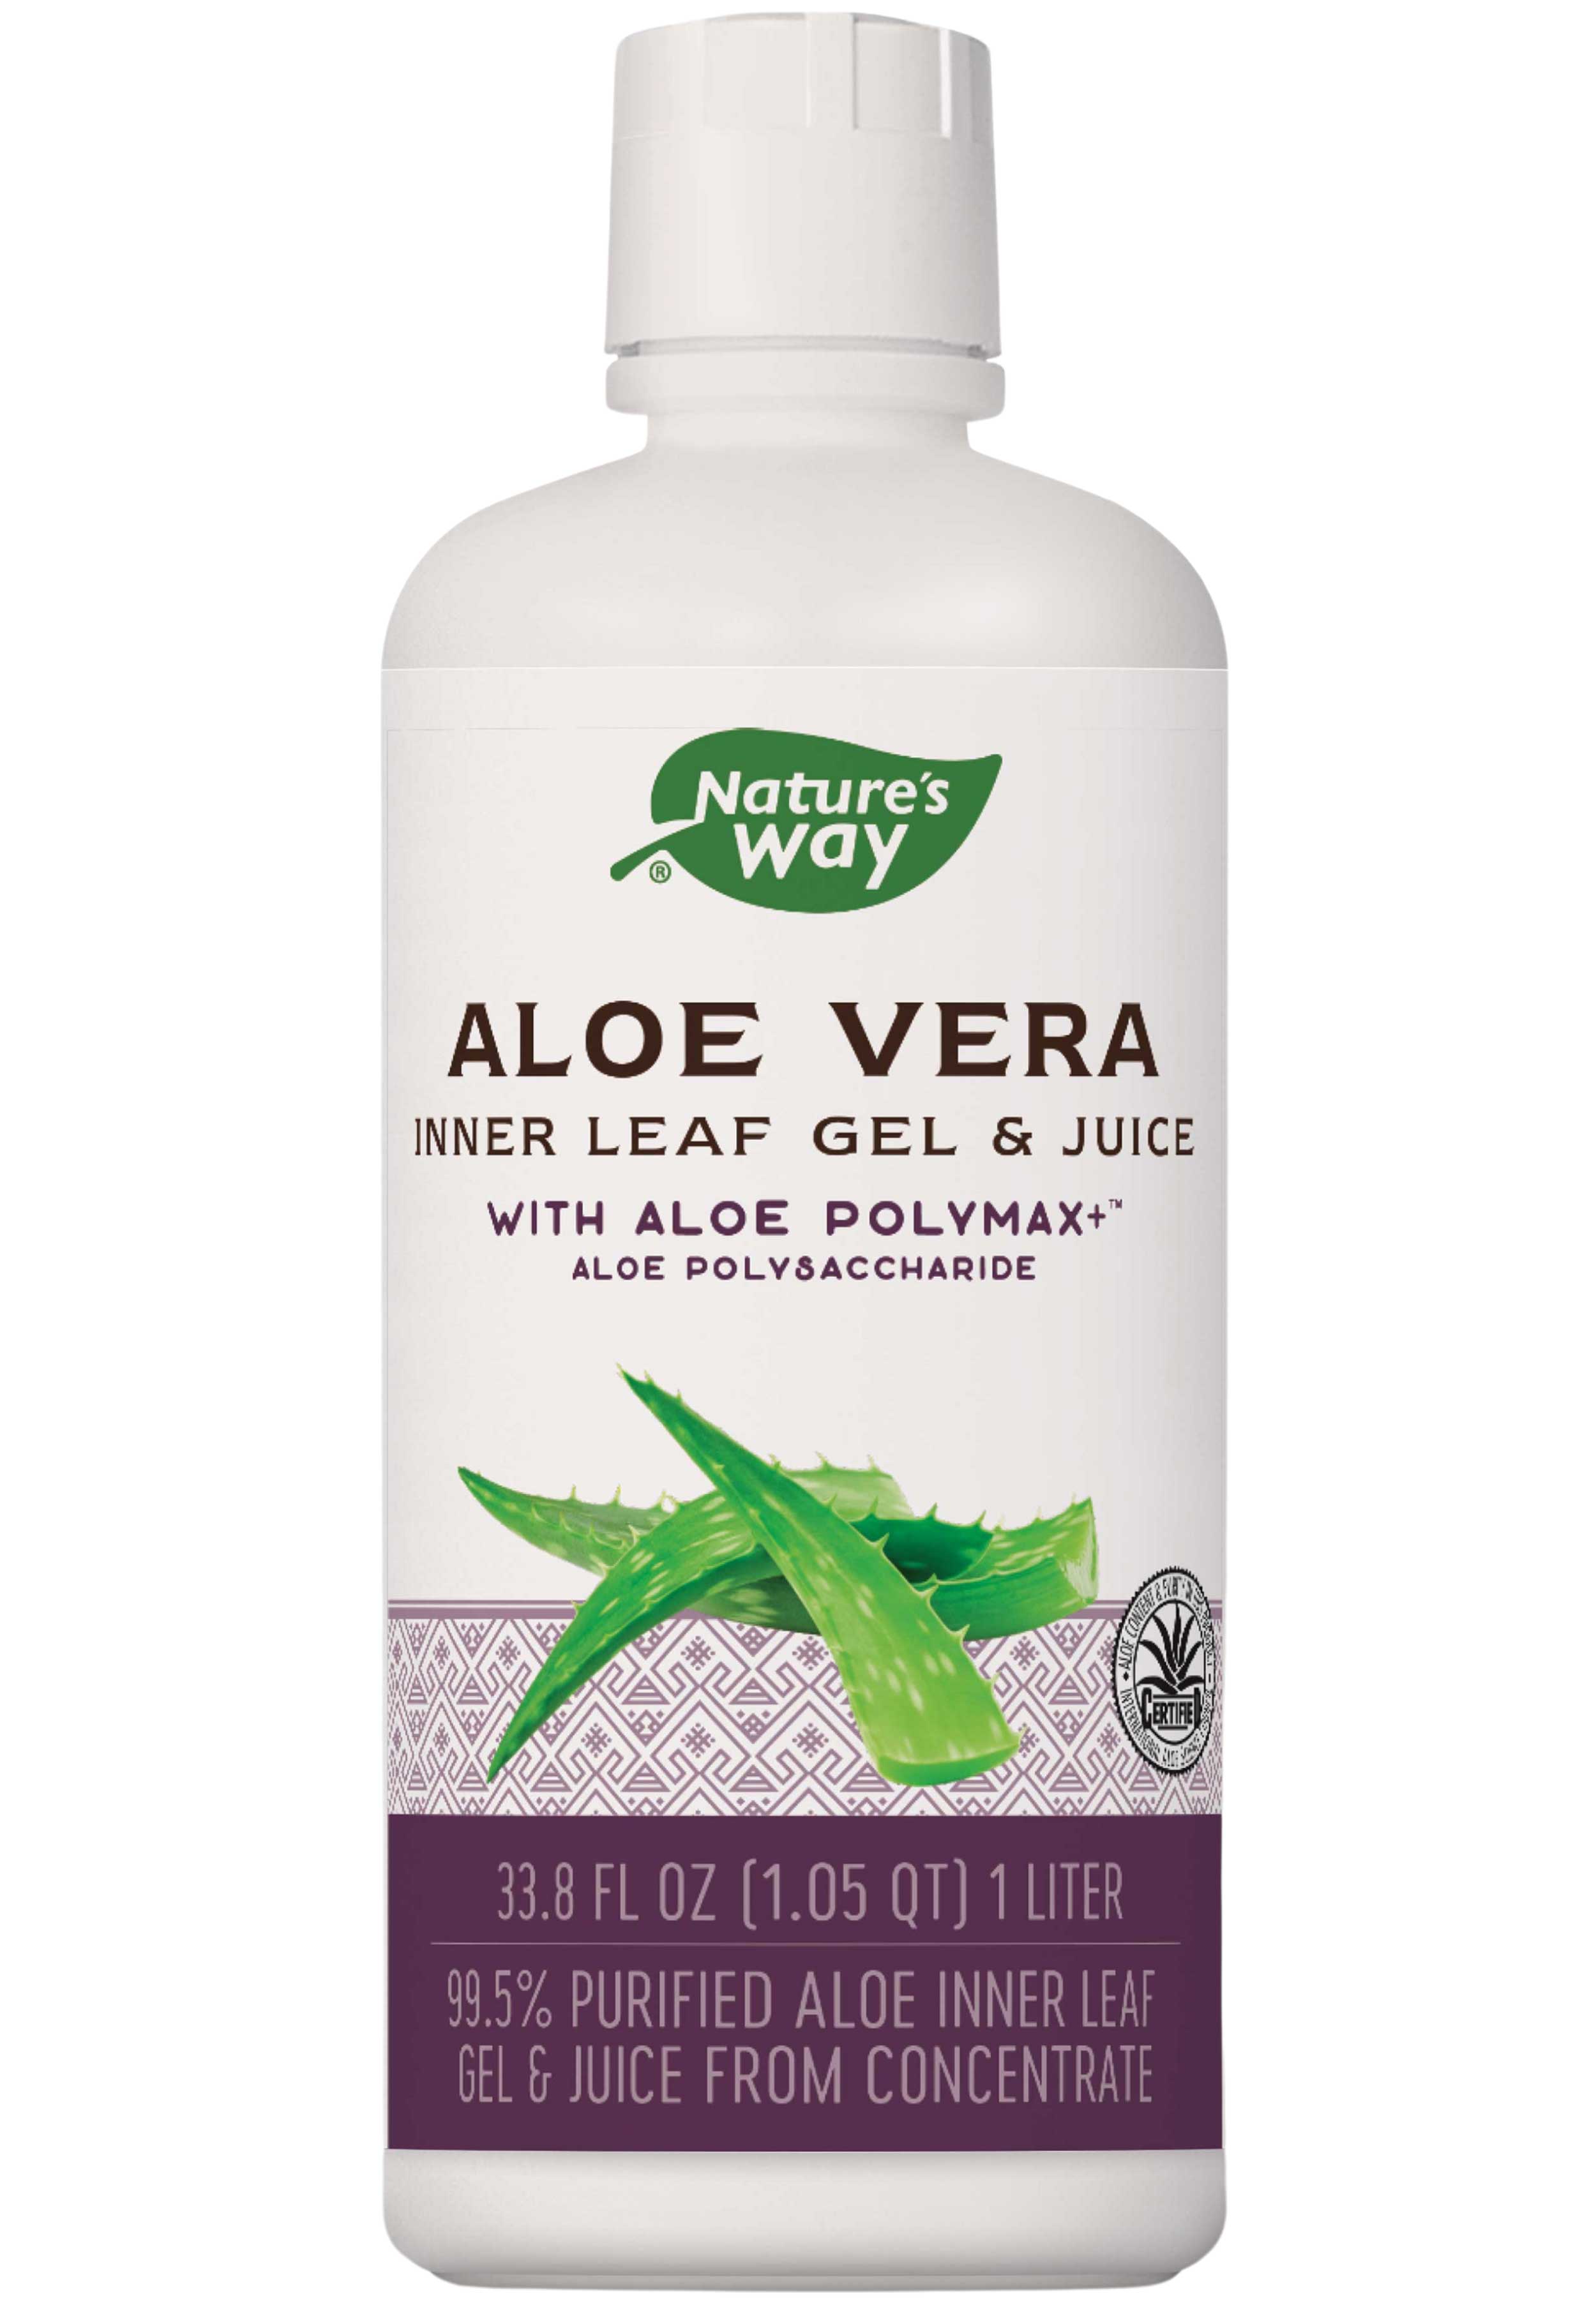 Nature's Way Aloe Vera Inner Leaf Gel & Juice